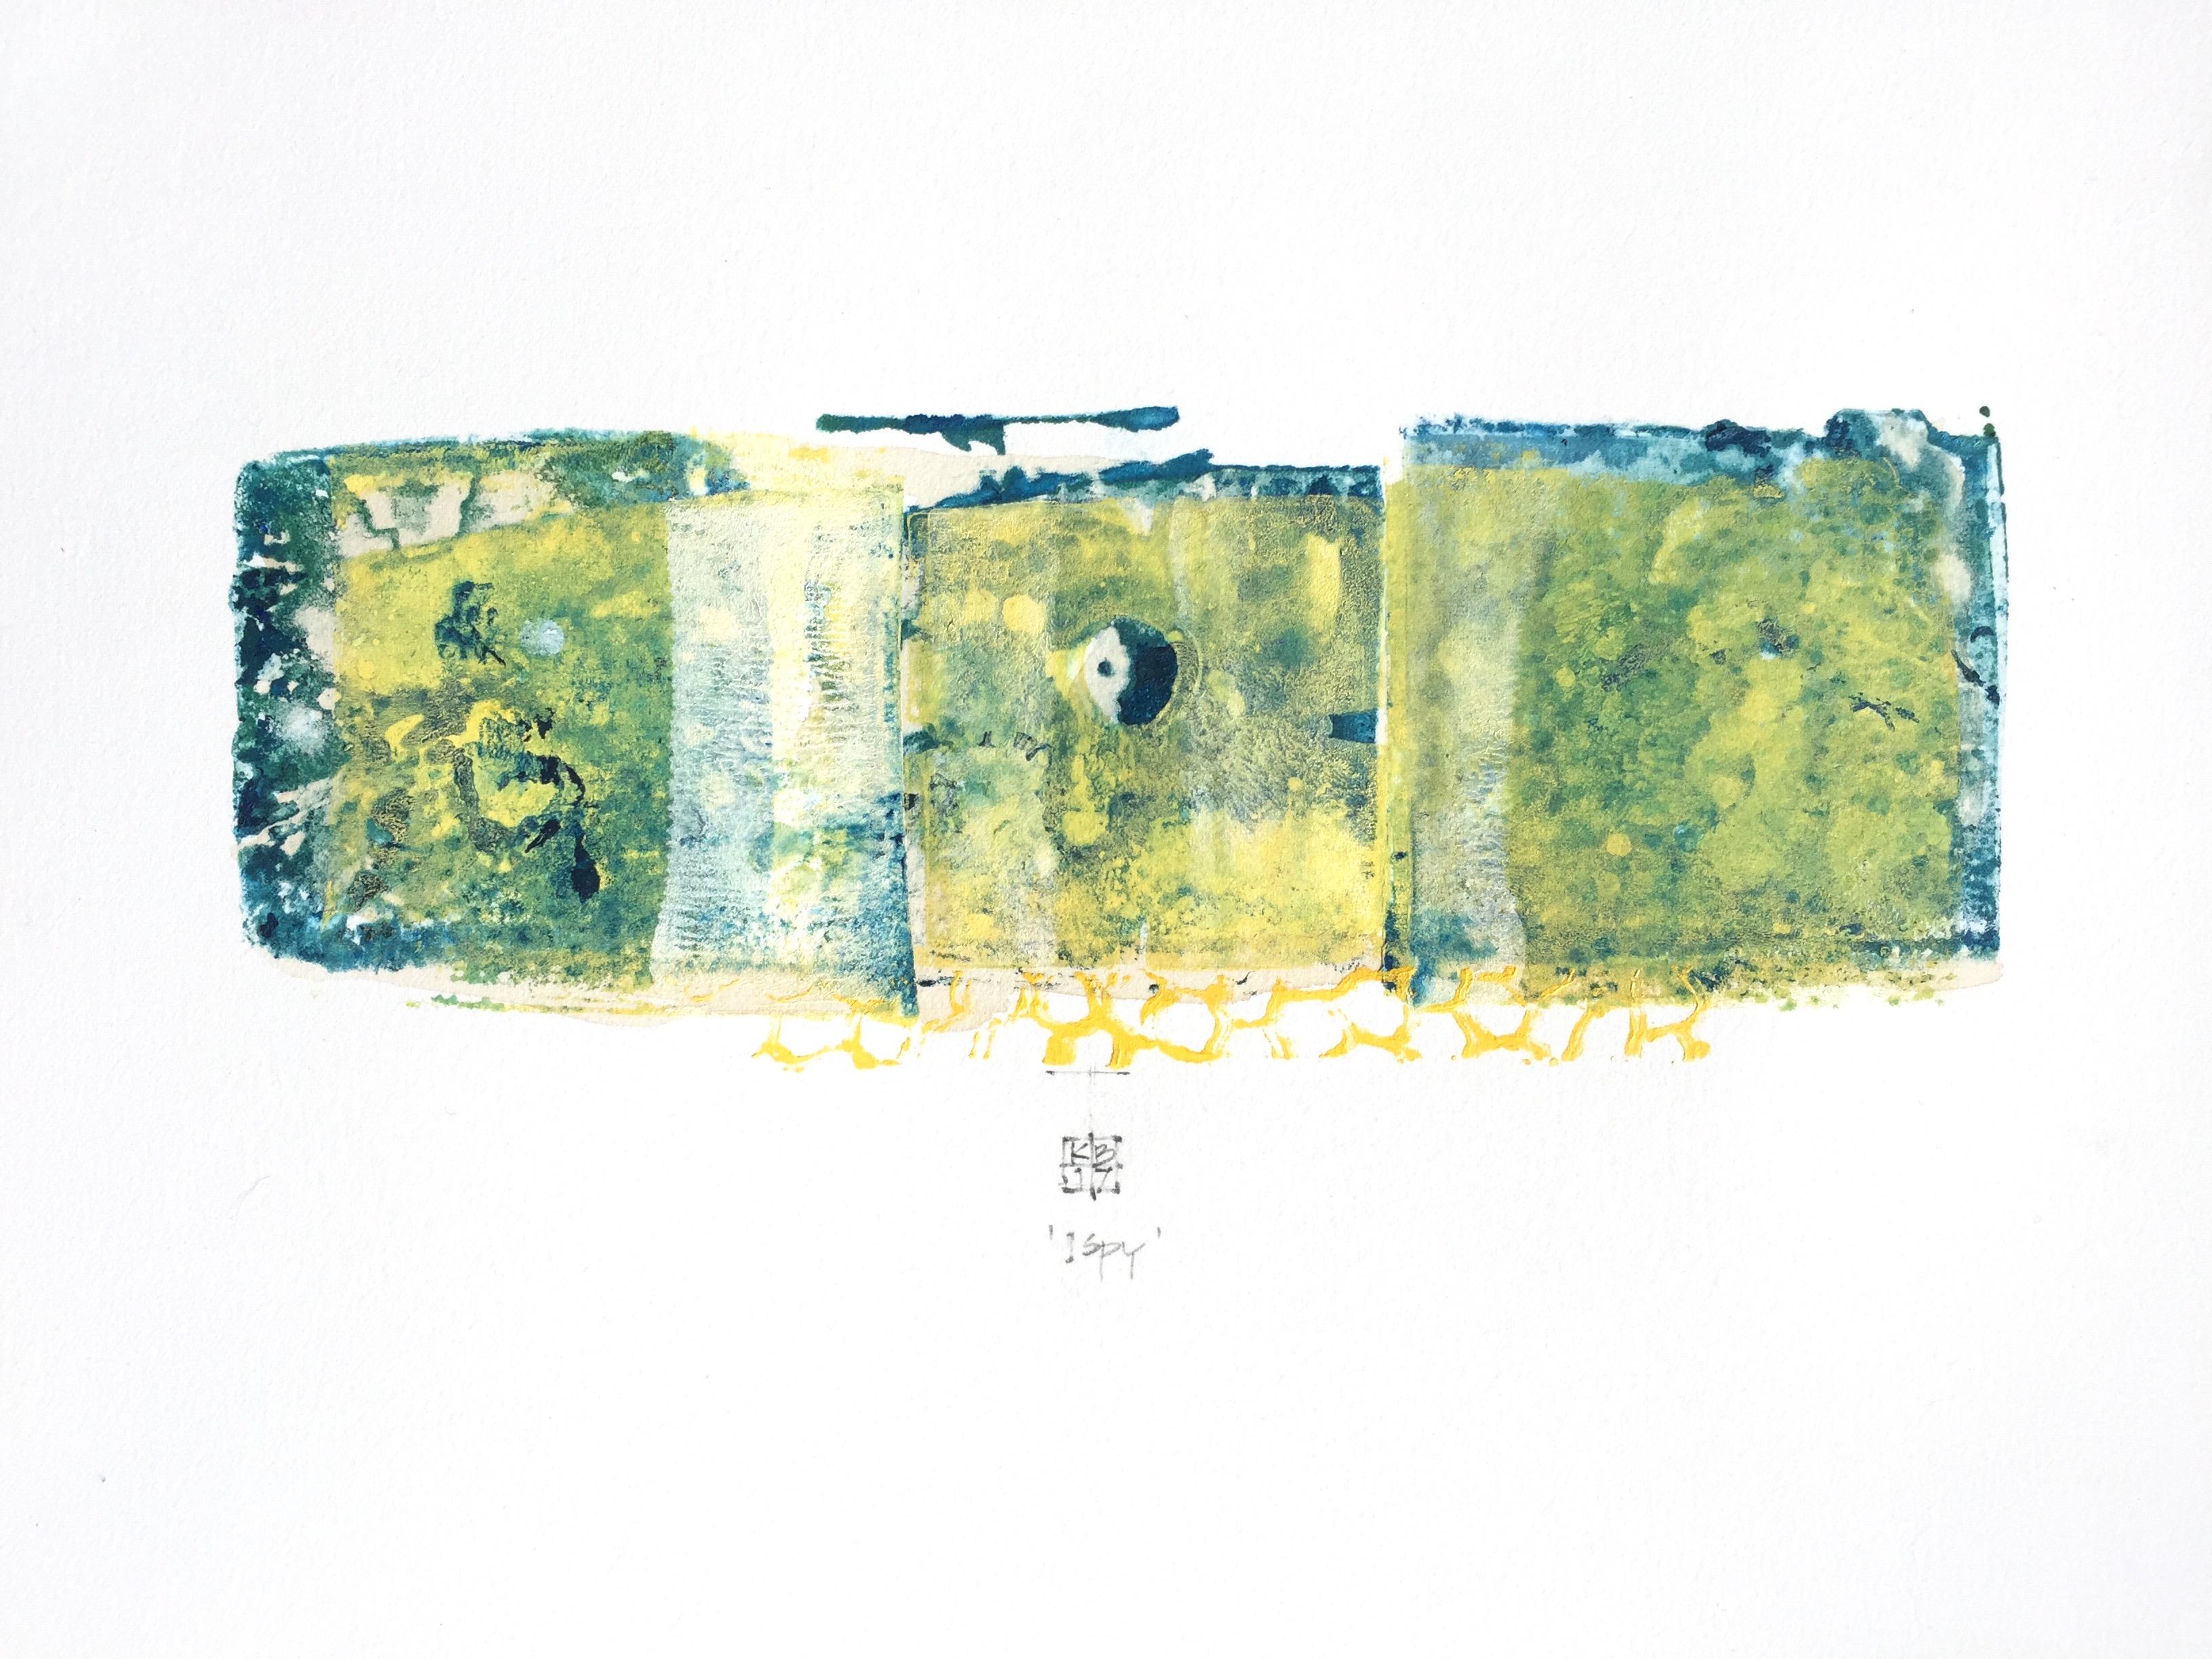 Abstract Print Karin Bruckner - ISpy, monotype abstrait en techniques mixtes sur papier, vert et bleu